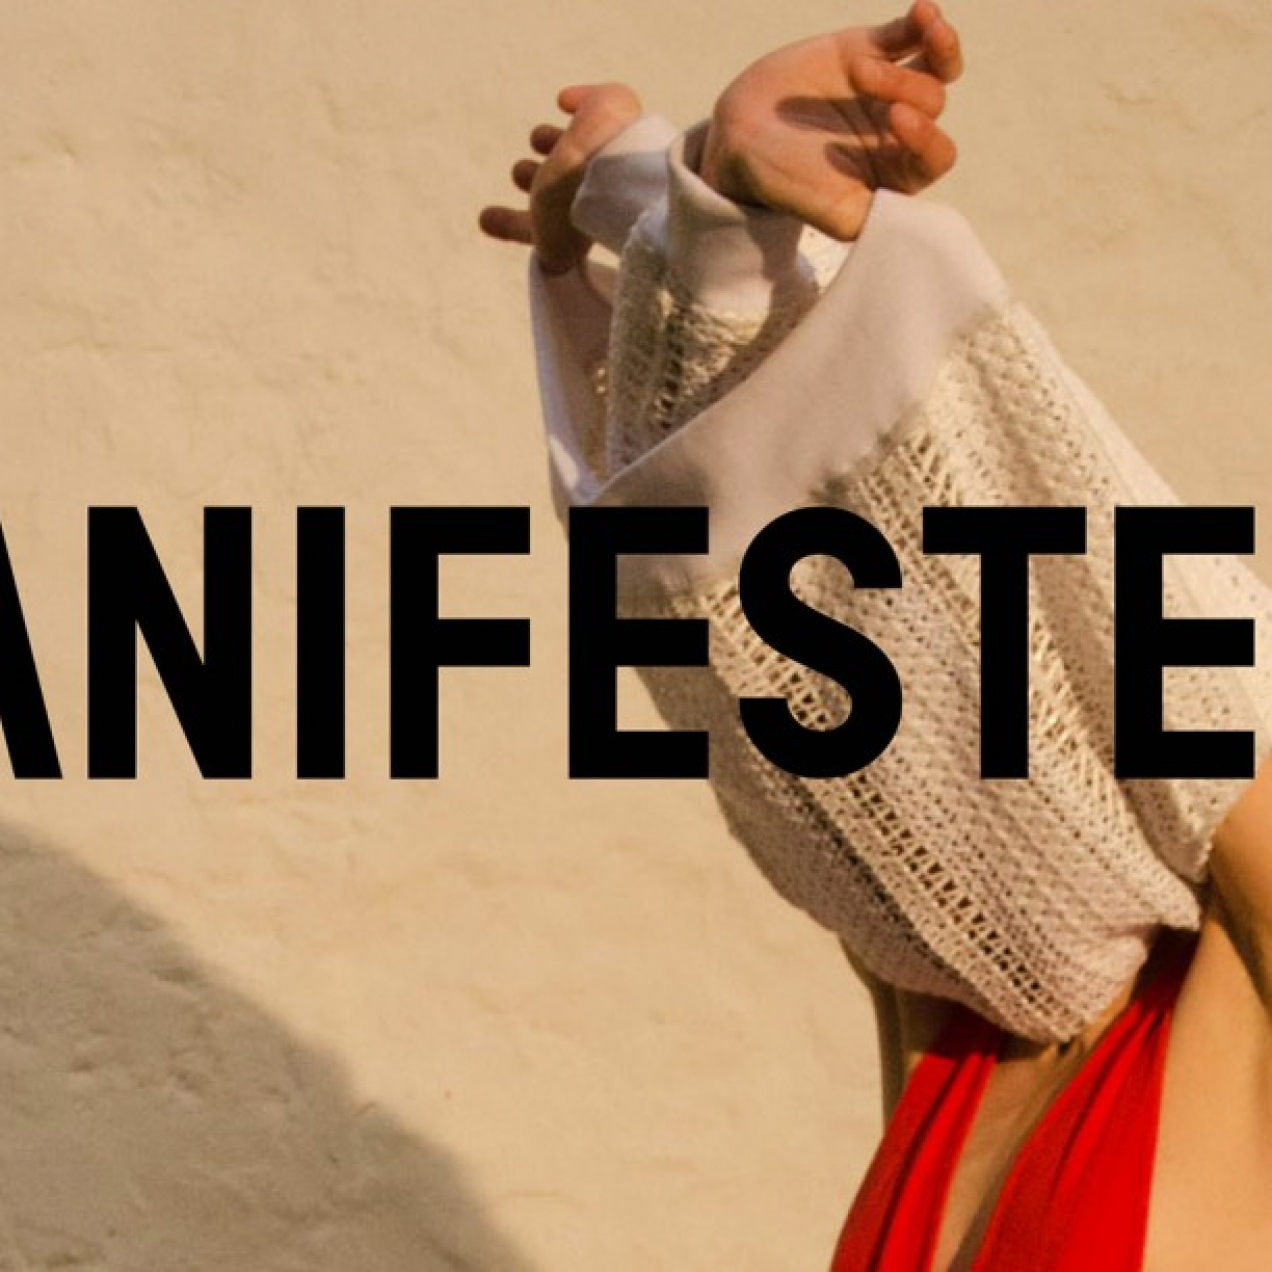 Manifeste 011, le premier concept store de mode vegan ouvre à Paris